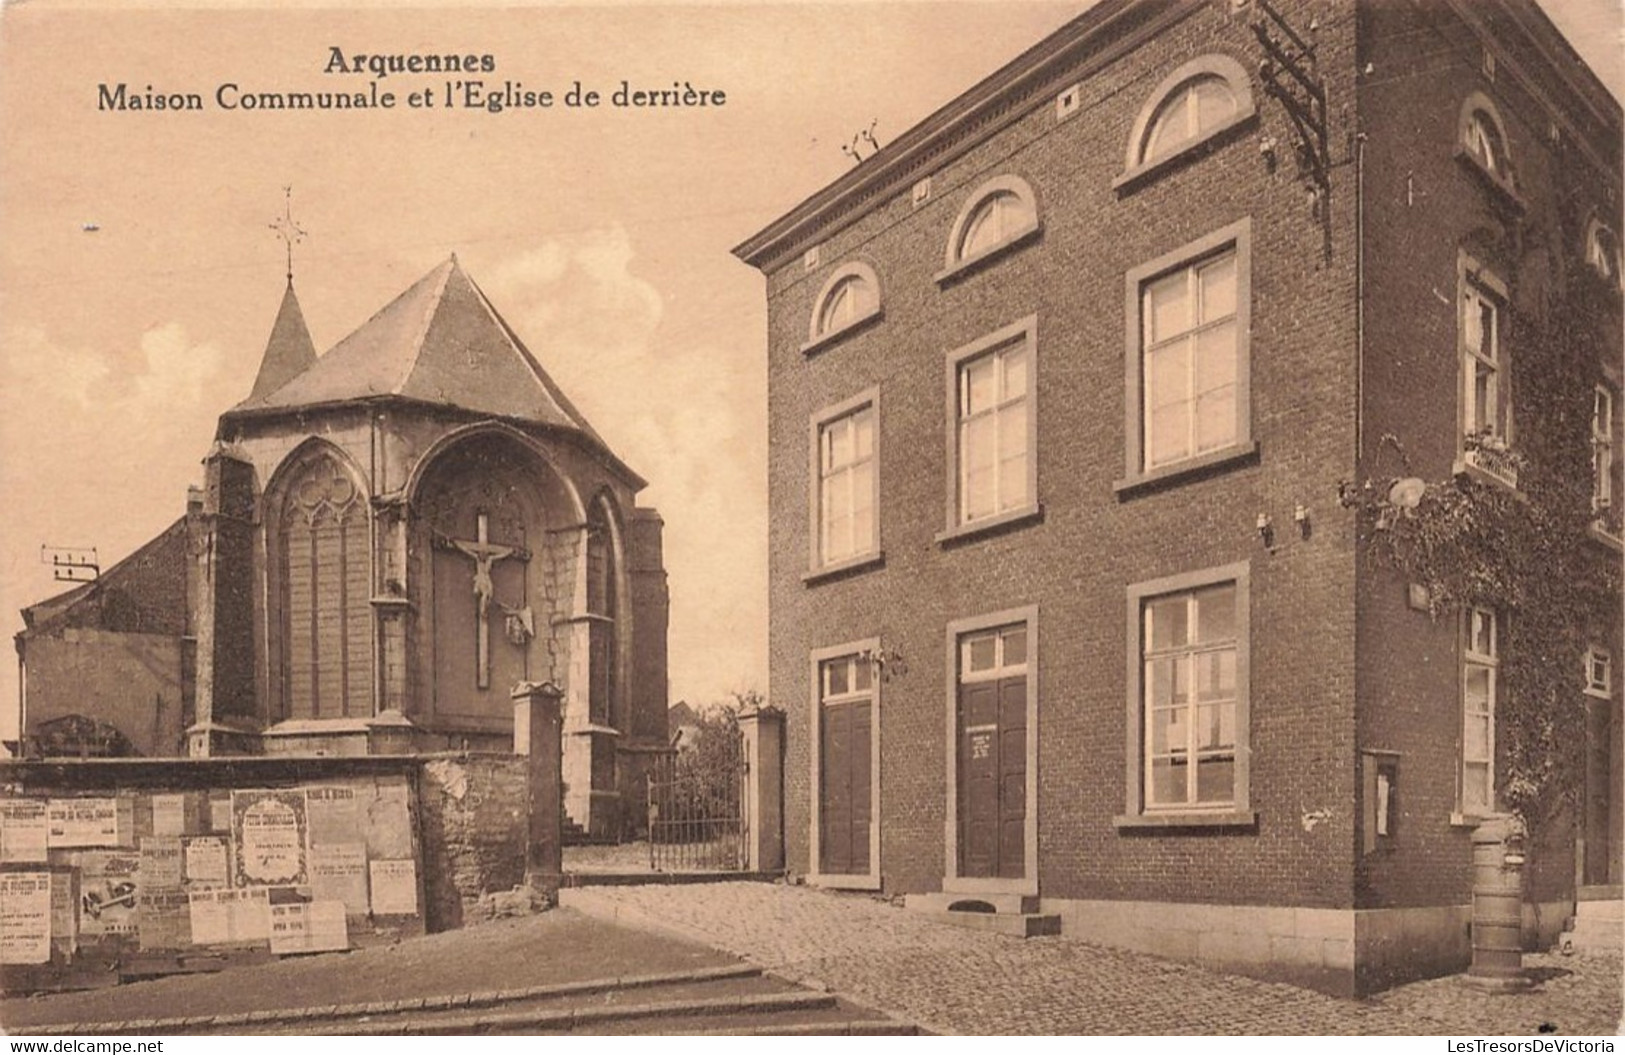 Belgique - Arquennes - Maison Communale Et L'église De Derrière - Edit. Gaston Dechief Marchand - Carte Postale Ancienne - Soignies